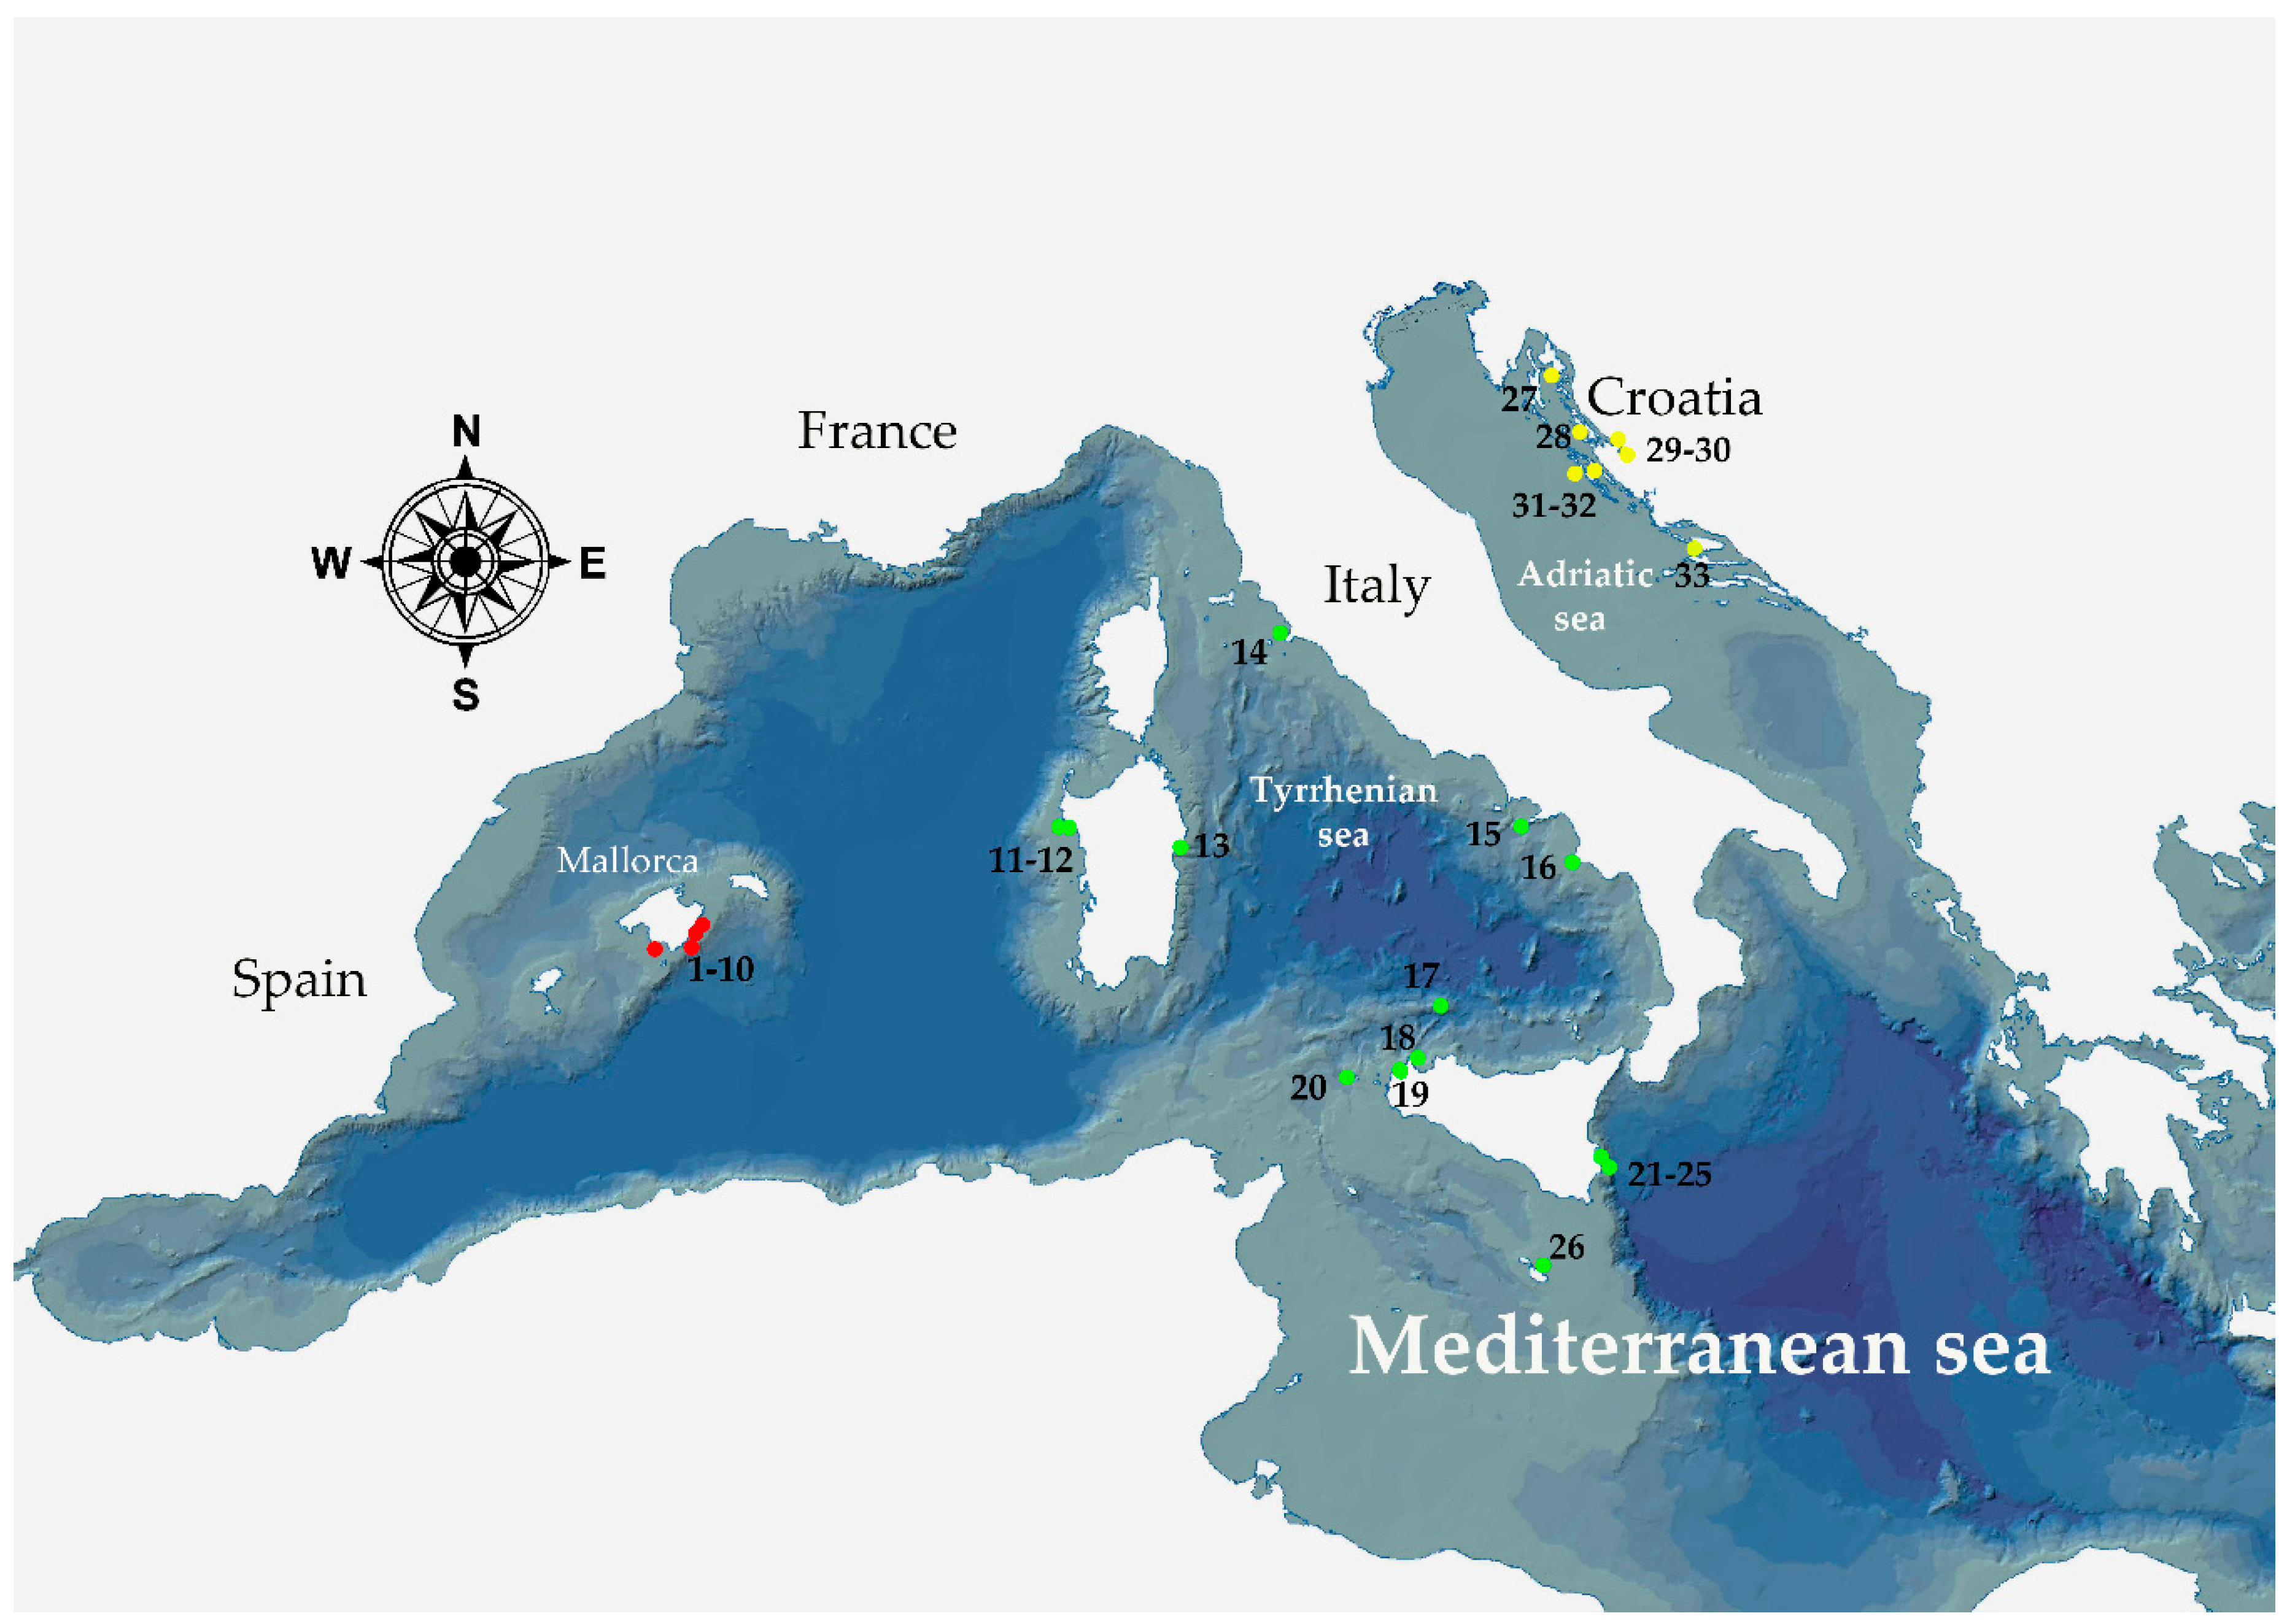 Mediterranean Sea reaches highest temperature ever